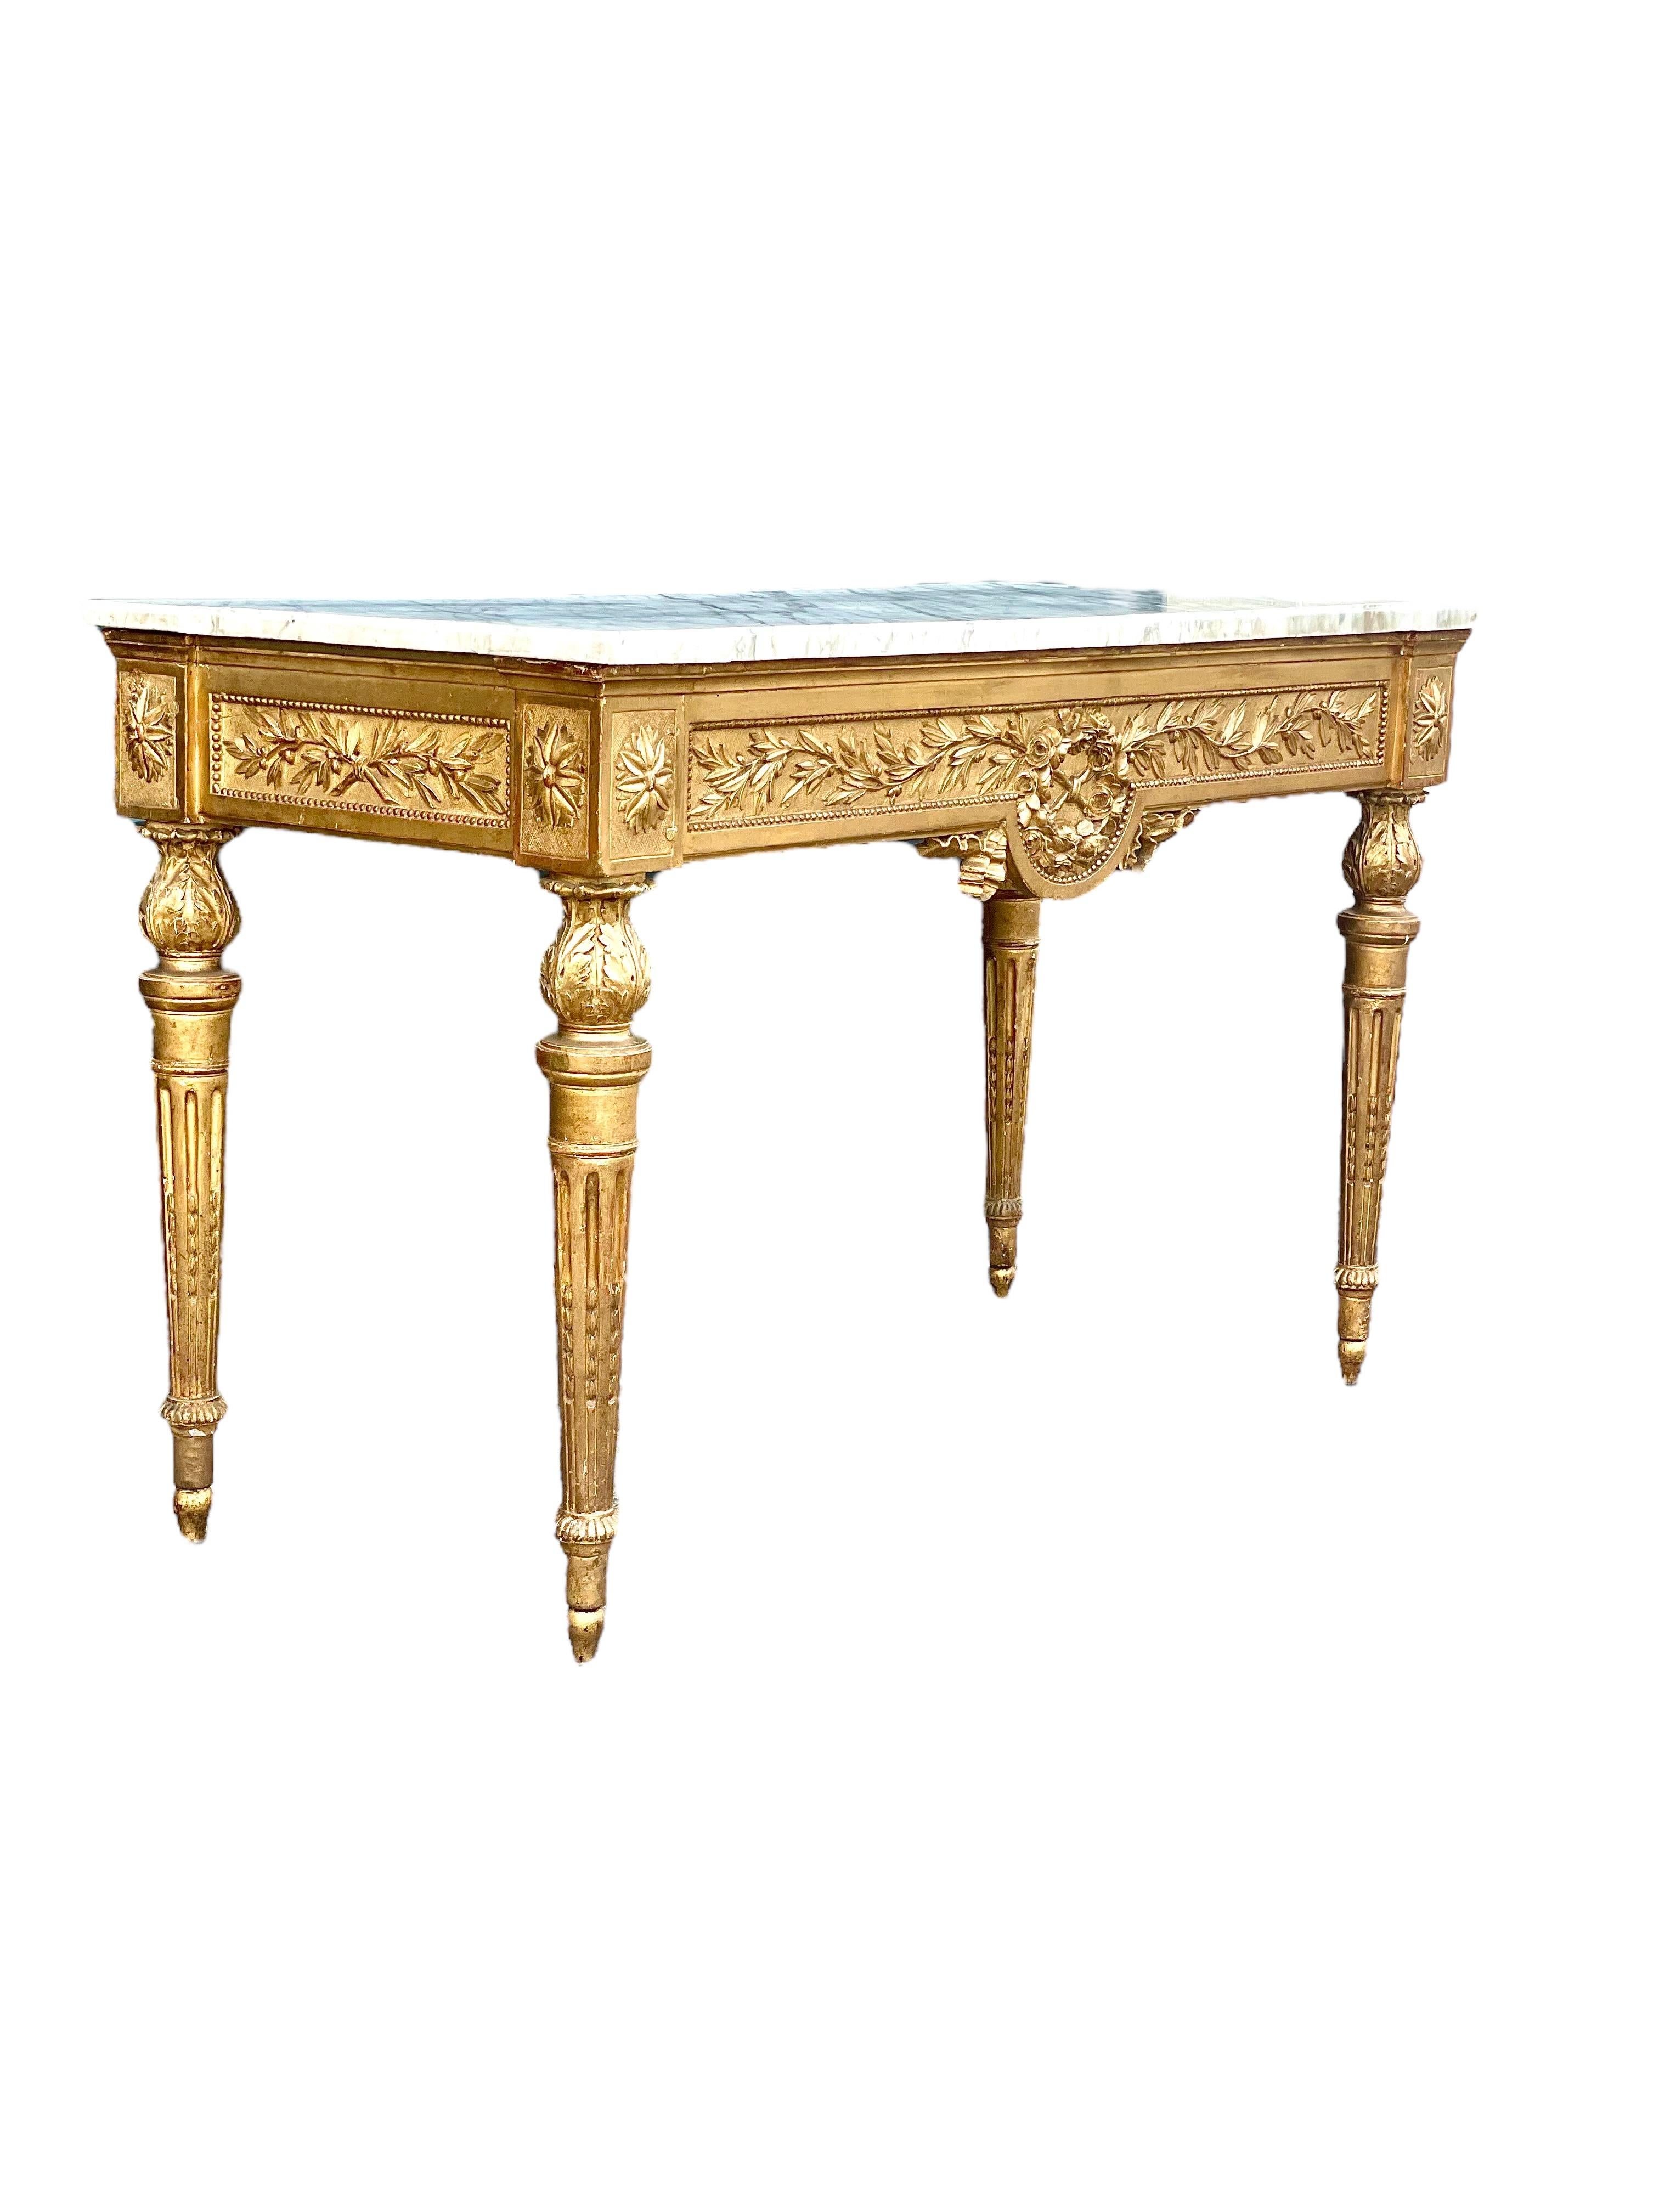 Opulente console en bois doré sculpté d'époque Louis XVI, avec son plateau en marbre d'origine, datant du XVIIIe siècle. De forme rectangulaire, cette élégante table néoclassique est minutieusement sculptée et décorée, sa ceinture étant ornée sur